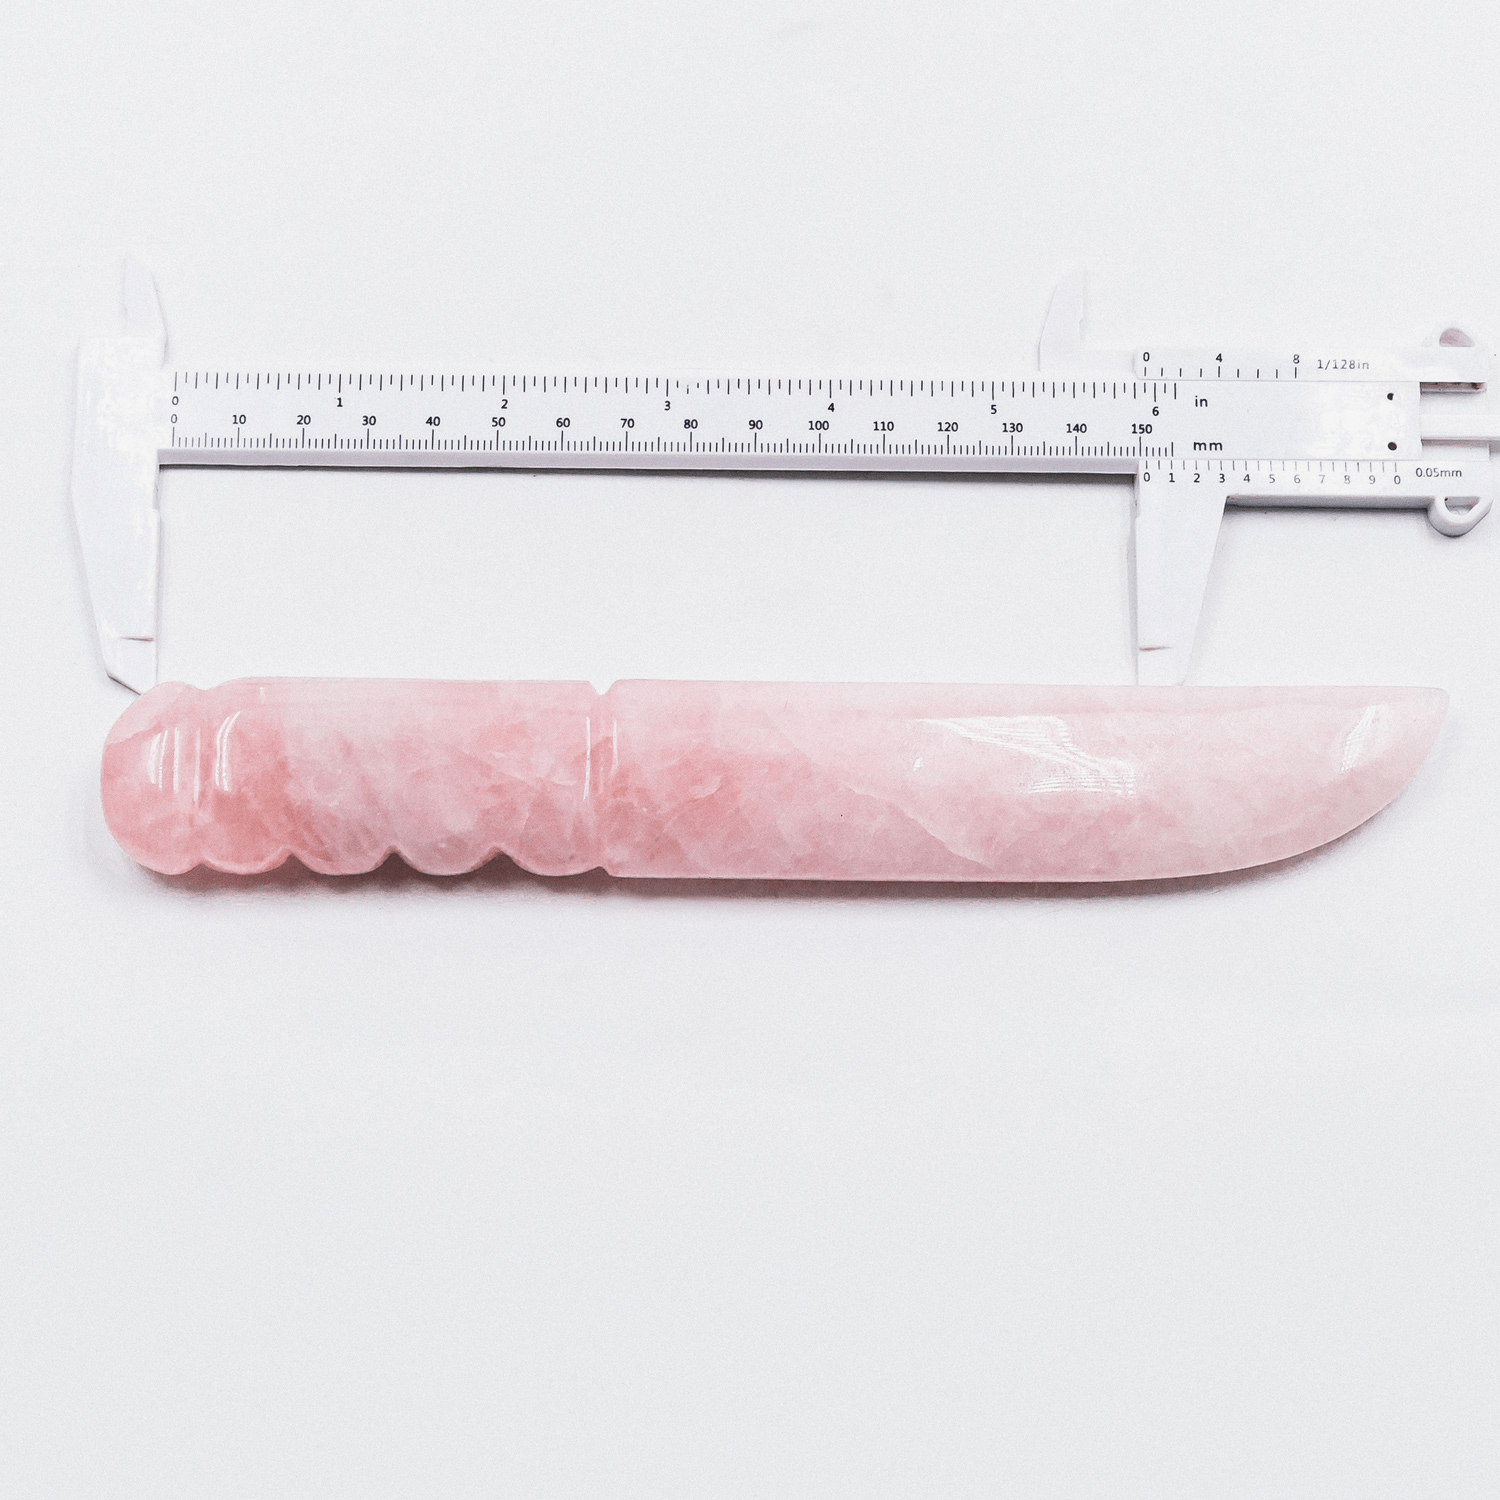 Reikistal Rose Quartz Knife